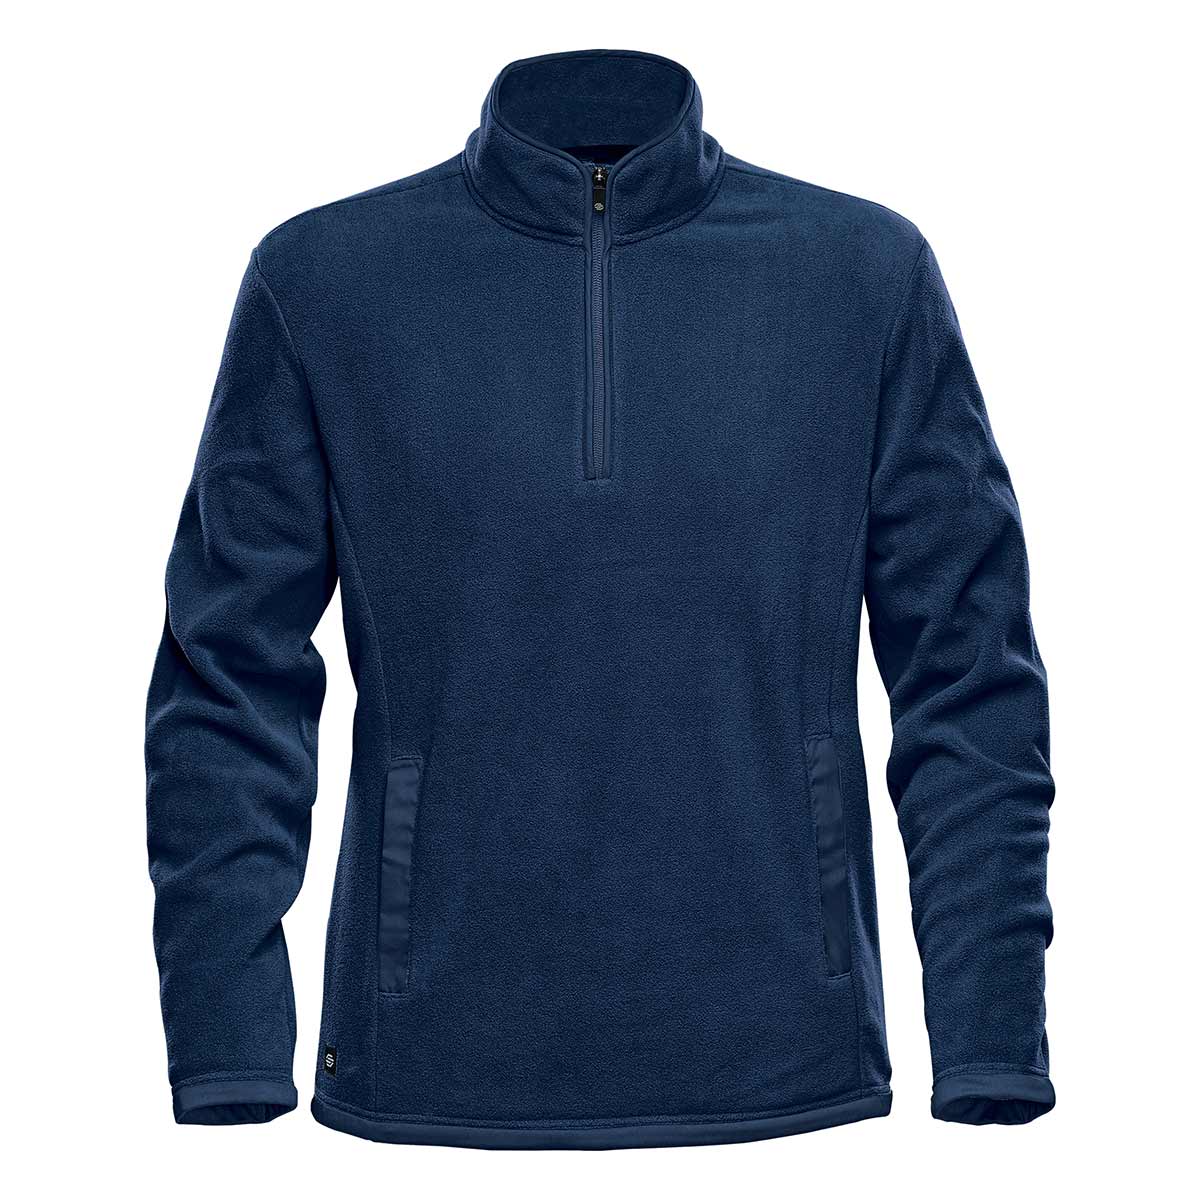 Avalanche Men's Lightweight Fleece Sweatshirt Long Sleeve 1/4 Zip